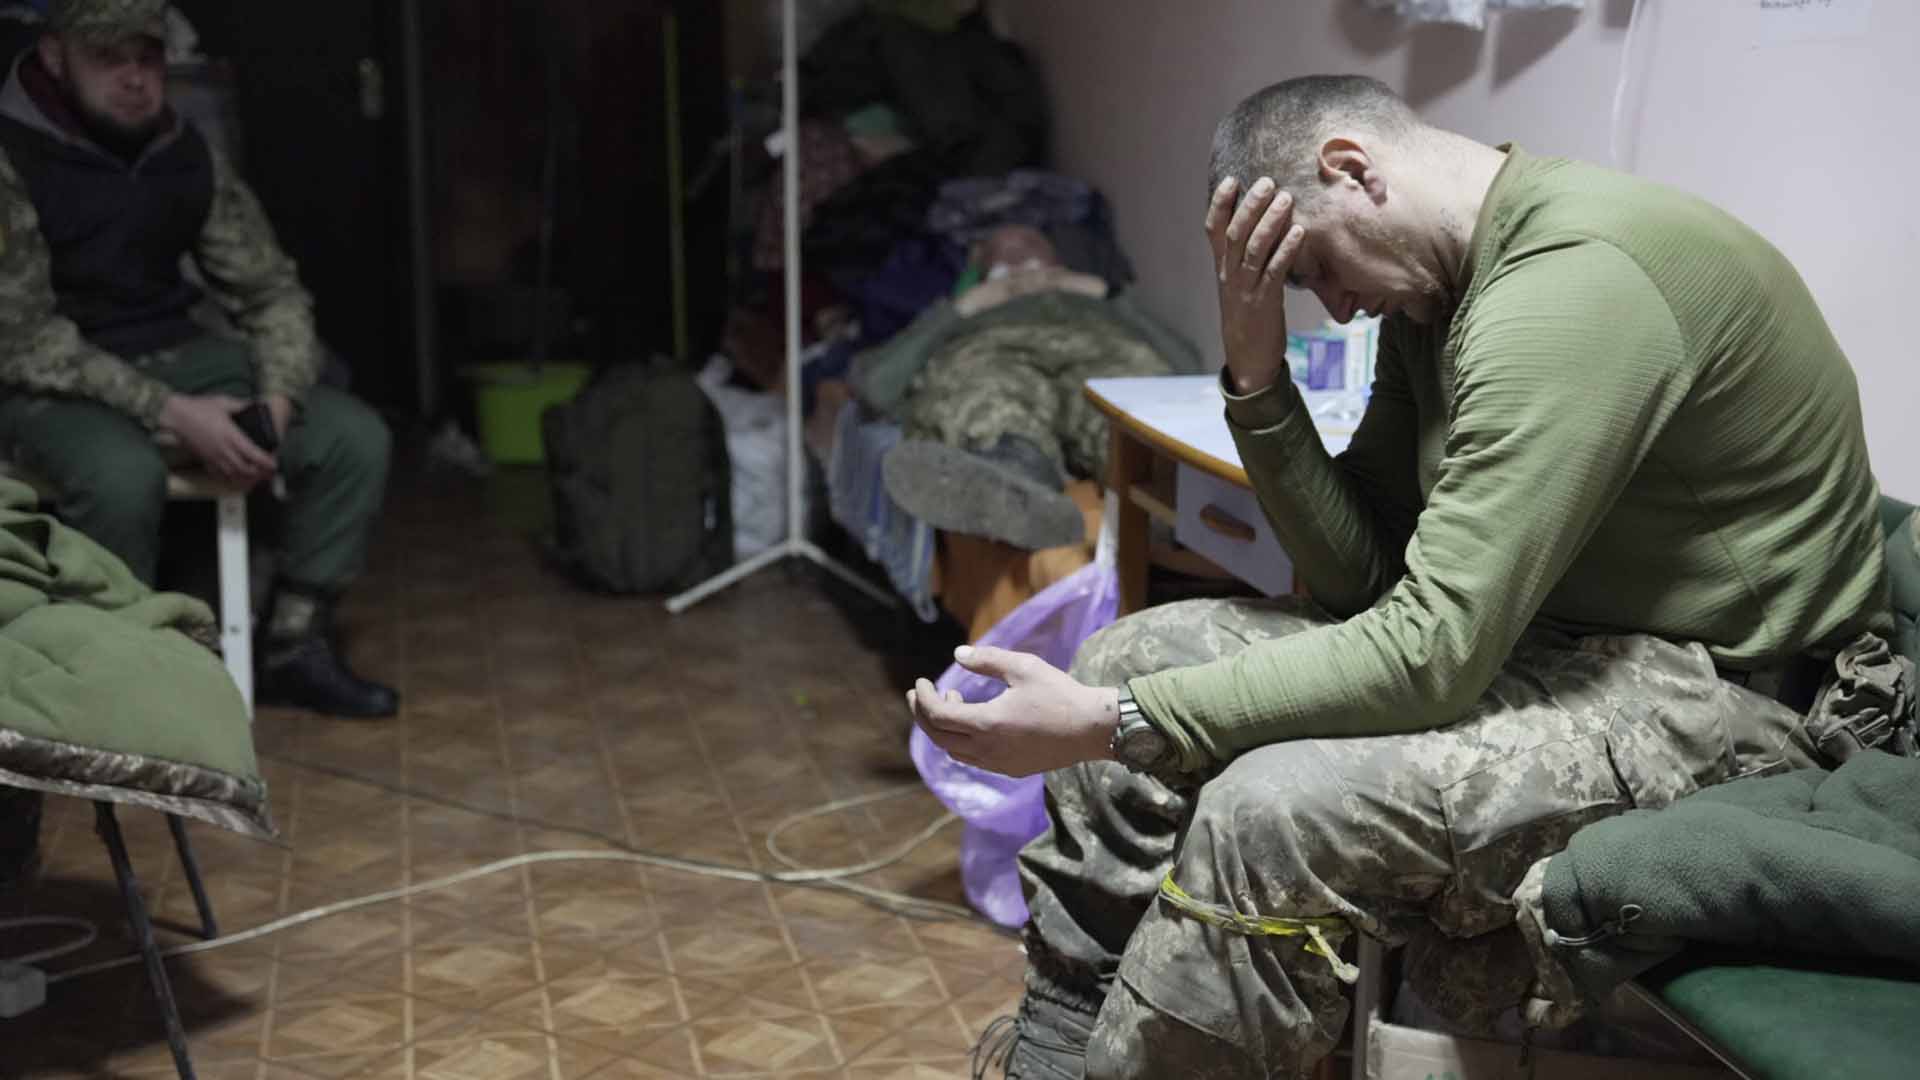 Krankenhäuser in der Ukraine: Erstversorgung im Flackerlicht